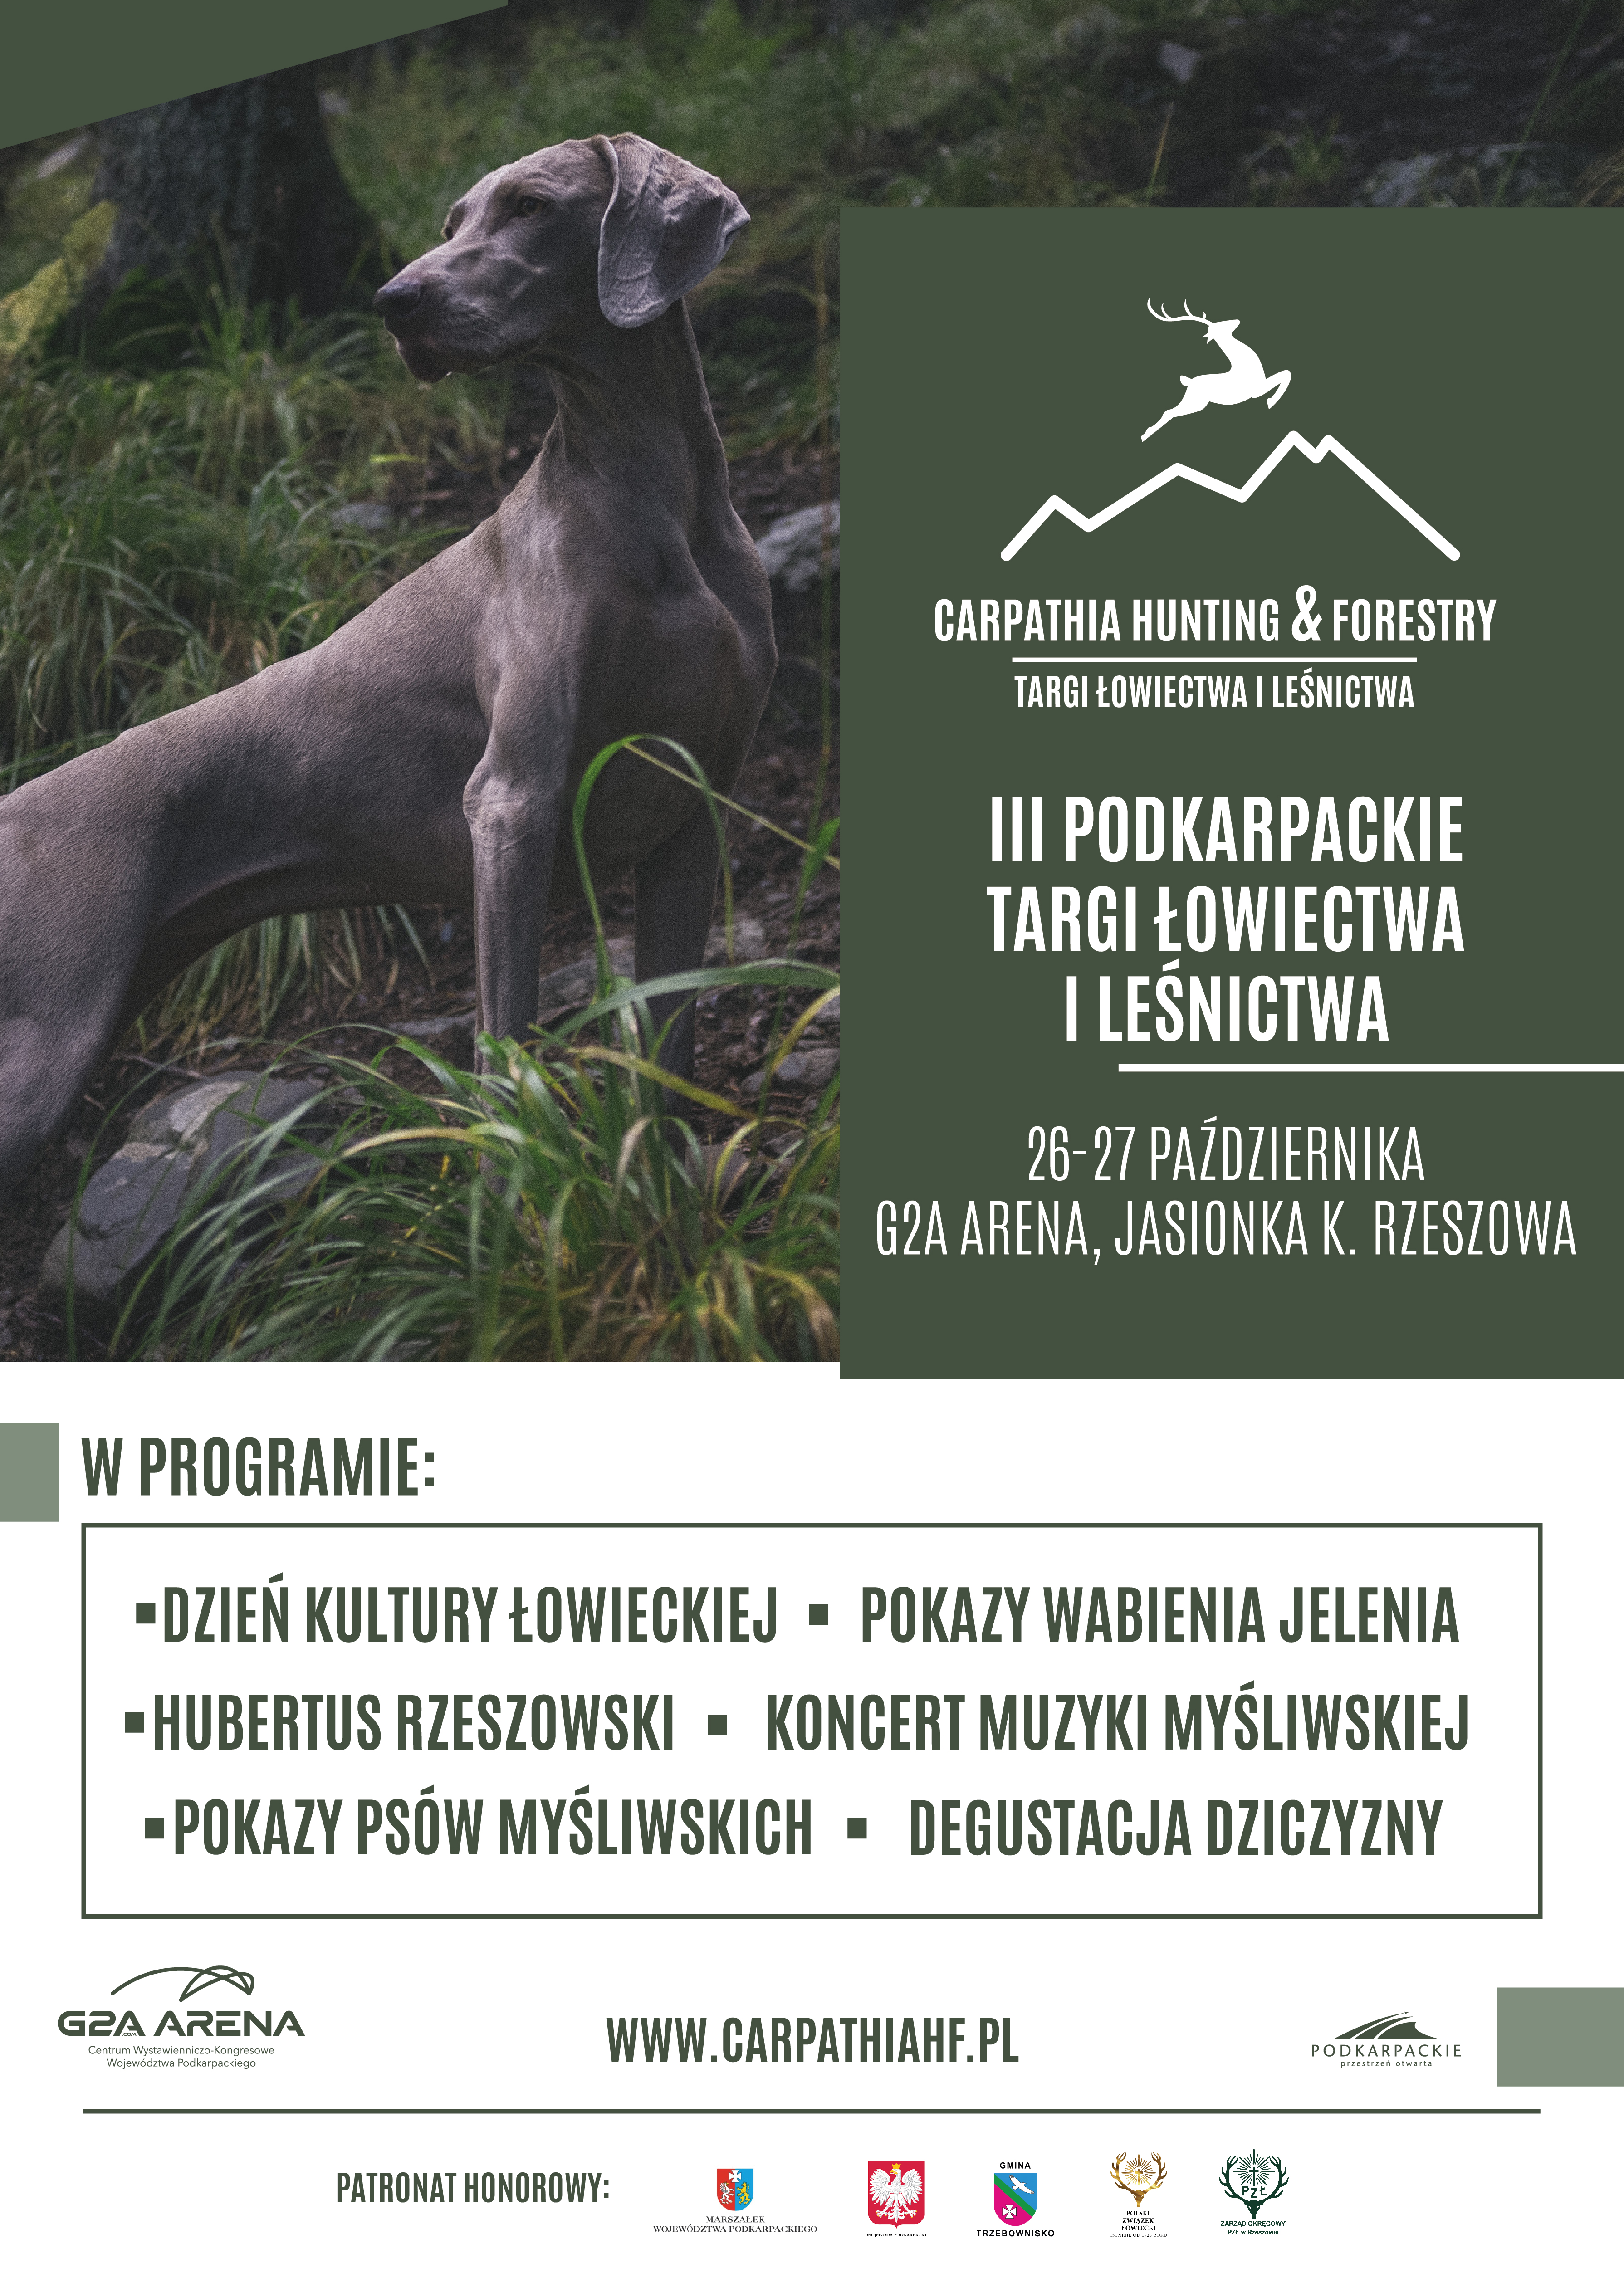 Trzecia edycja Targów Łowiectwa i Leśnictwa CARPATHIA HUNTING & FORESTY, która odbędzie się w dniach 26-27 października w G2A Arena w podrzeszowskiej Jasionce.